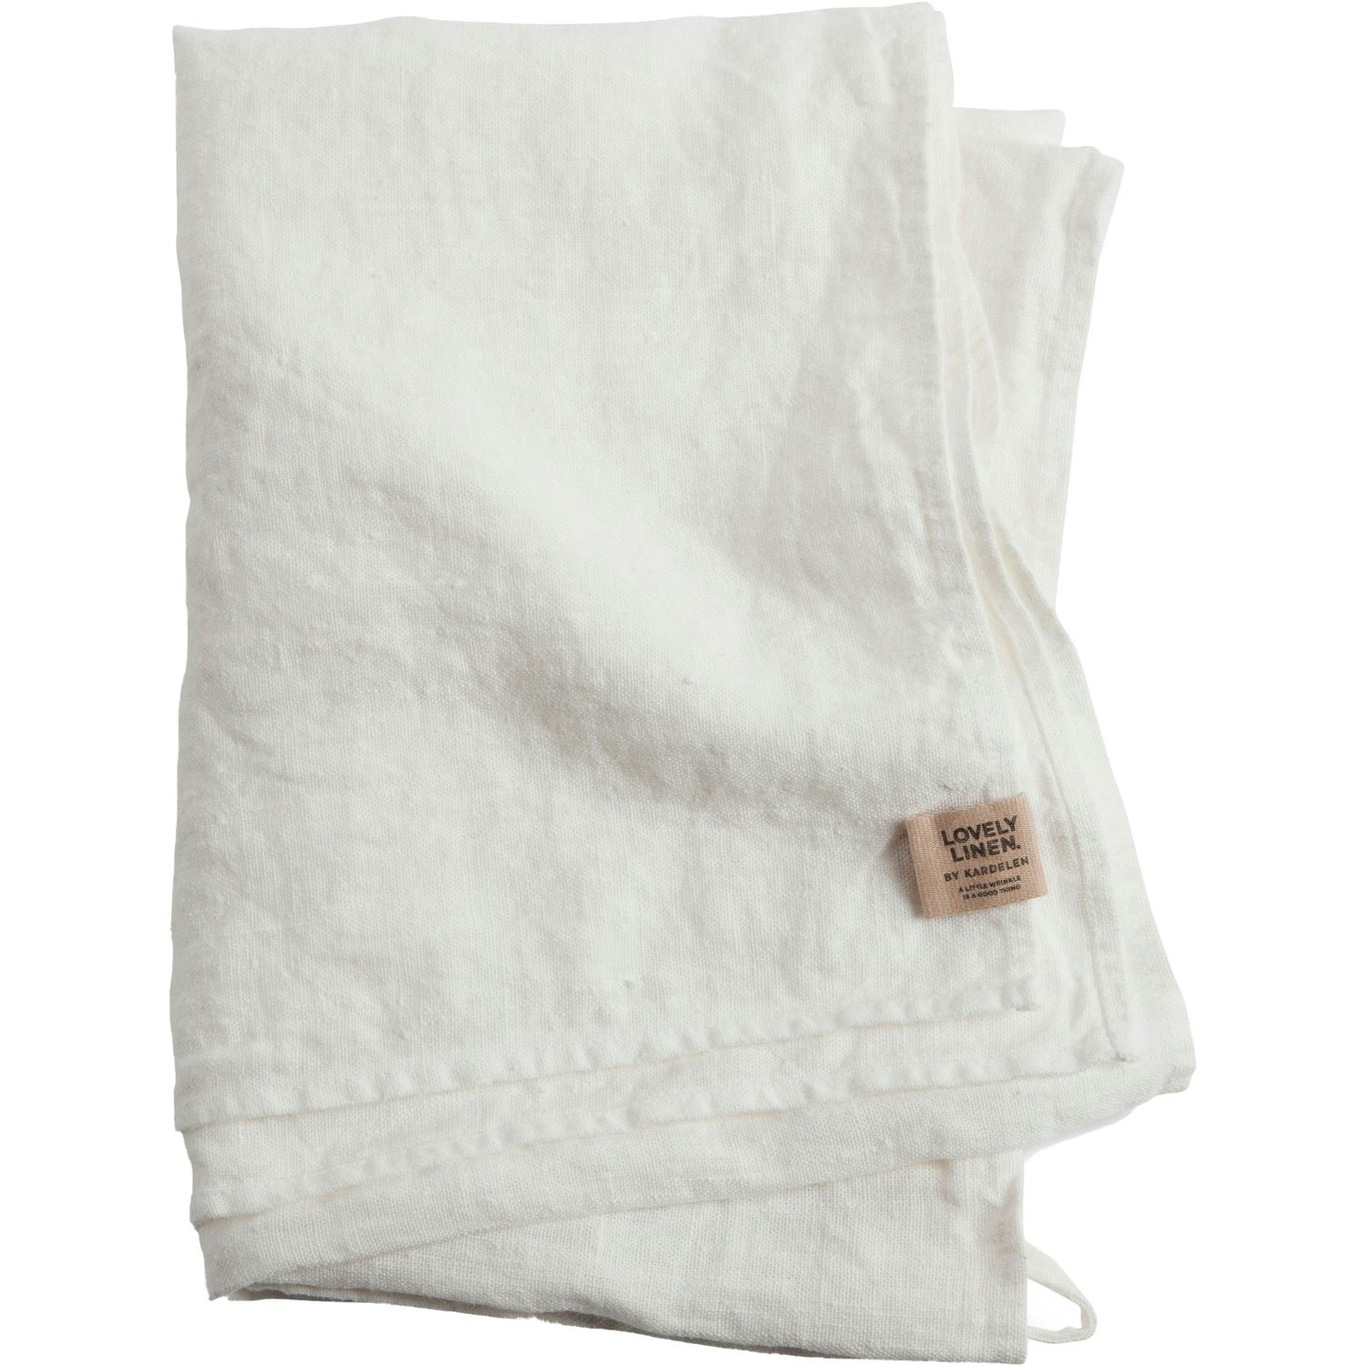 Lovely Hamam Towel 90x145 cm, Off-white